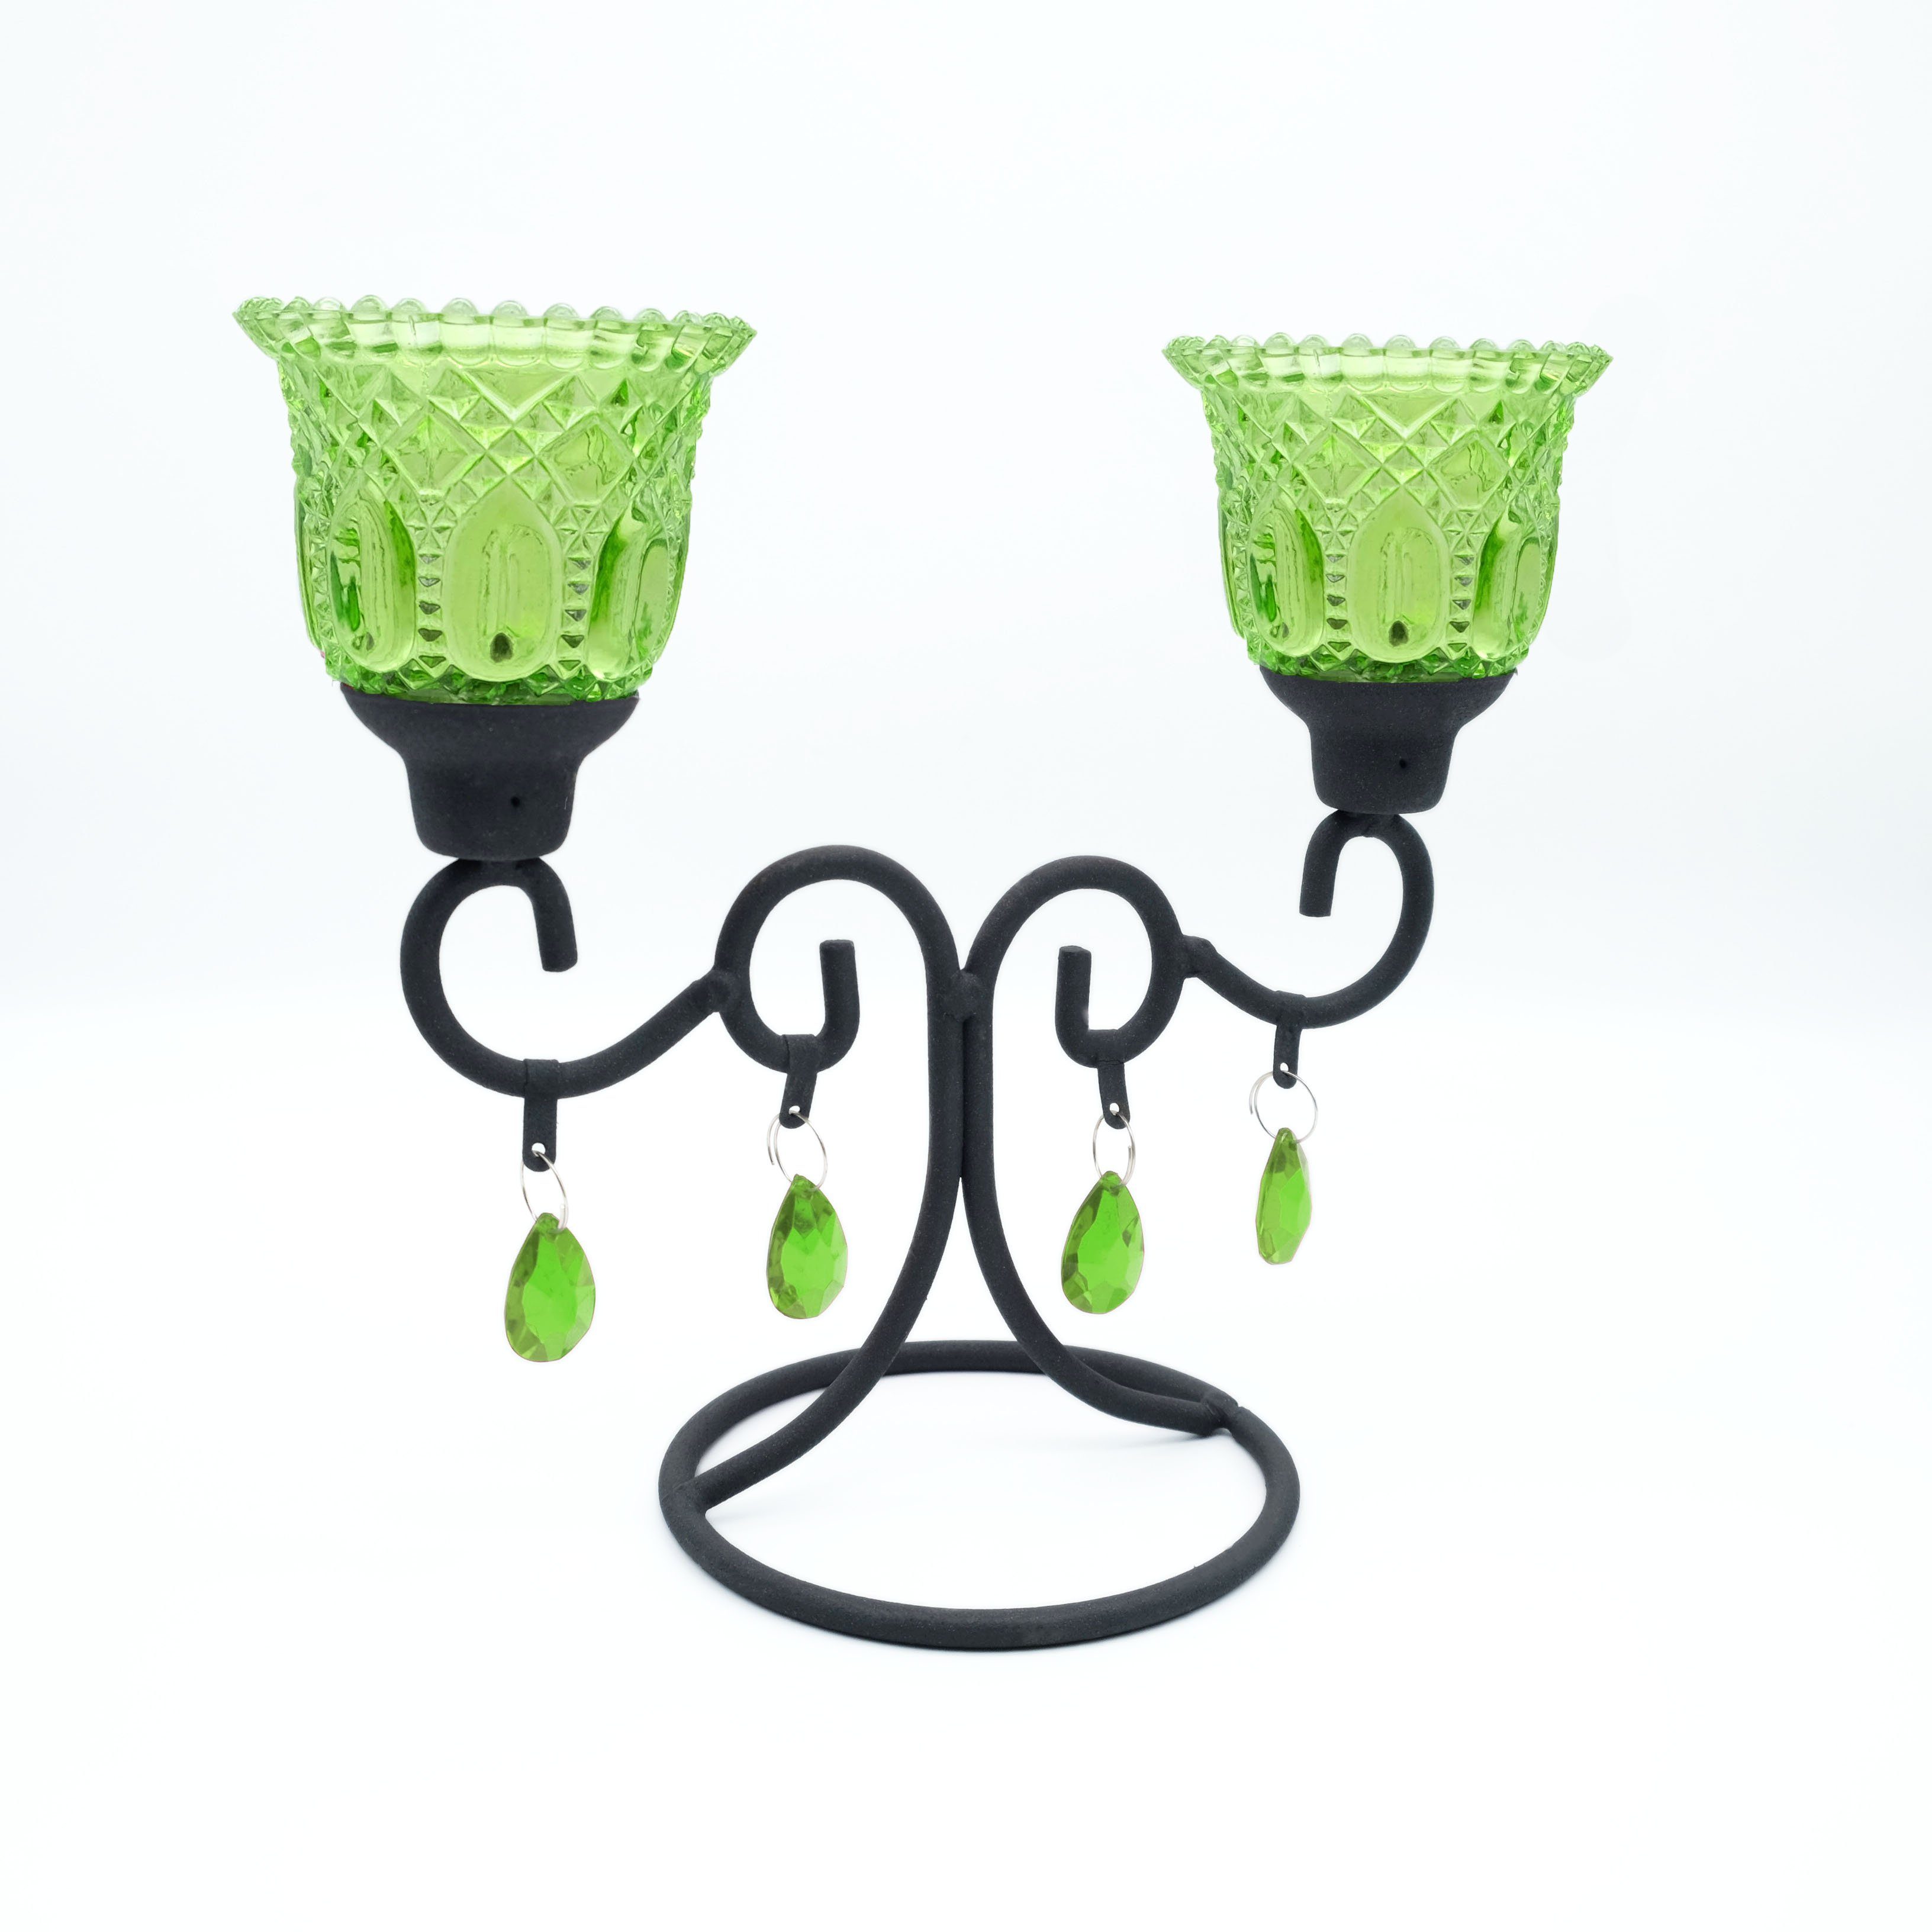 DeColibri Kerzenständer Kerzenständer, Kerzenhalter, Teelichthalter Glas, standfest, für Kerzen und Teelichte geeignet grün